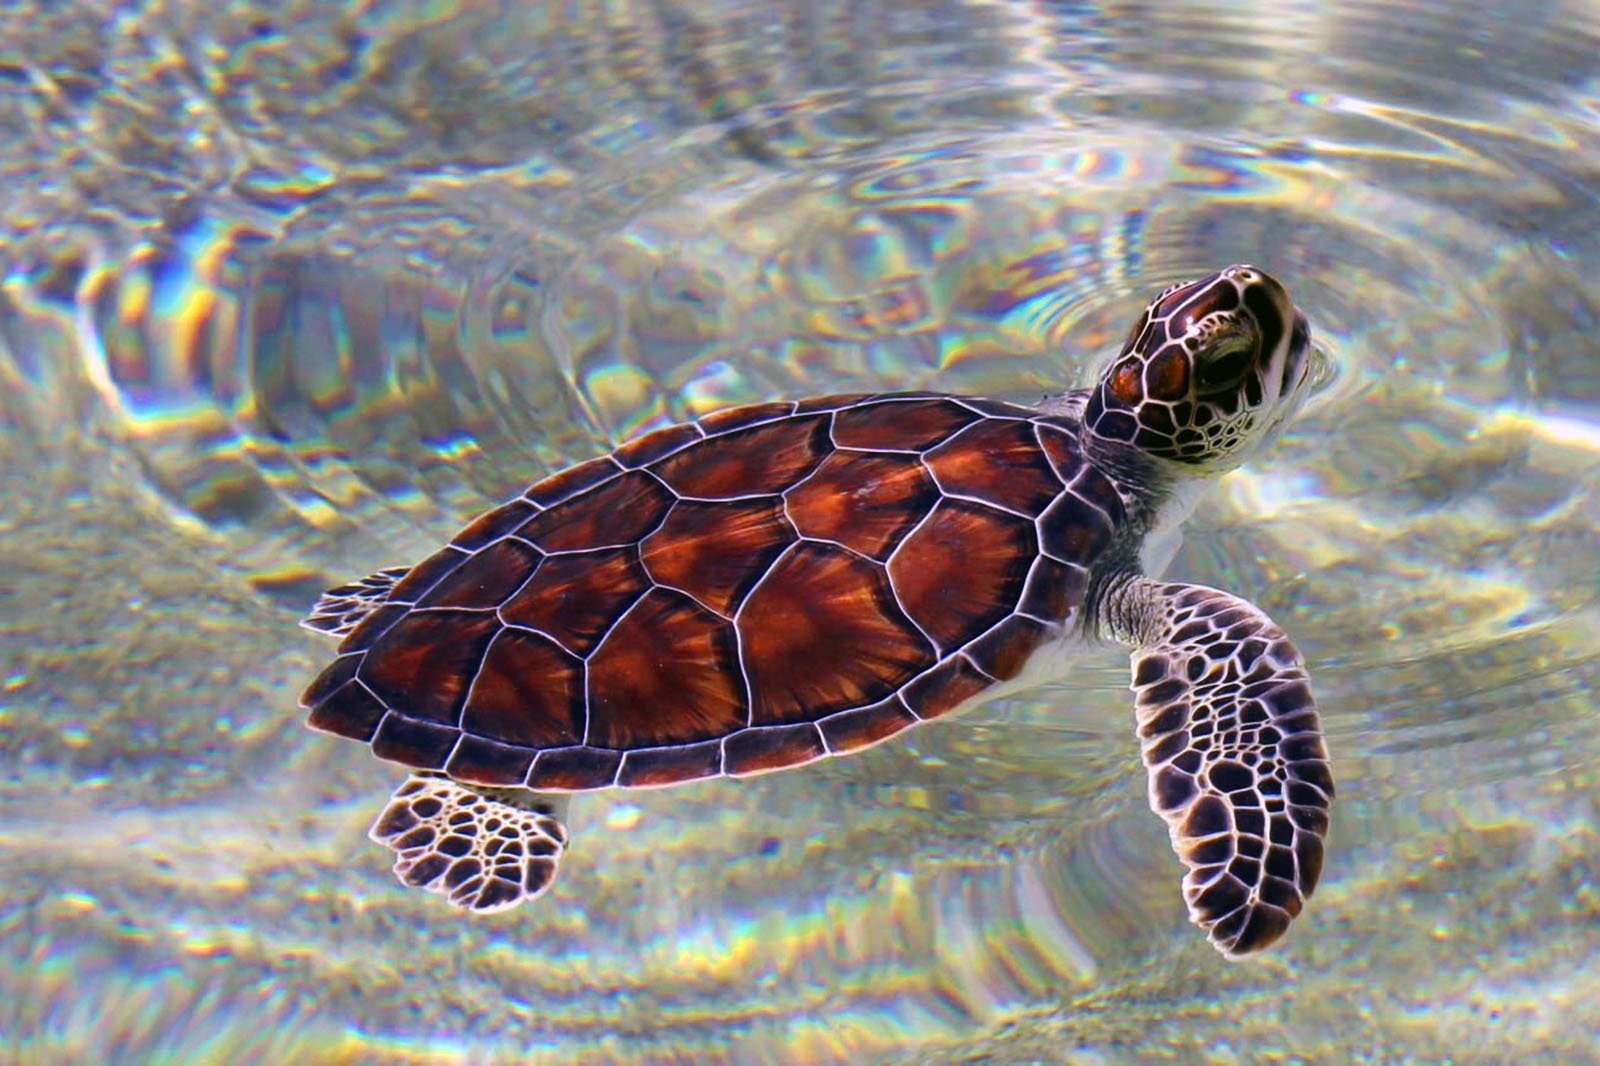 Как выпустить черепашек в океан на острове Литл Корн в Манагуа